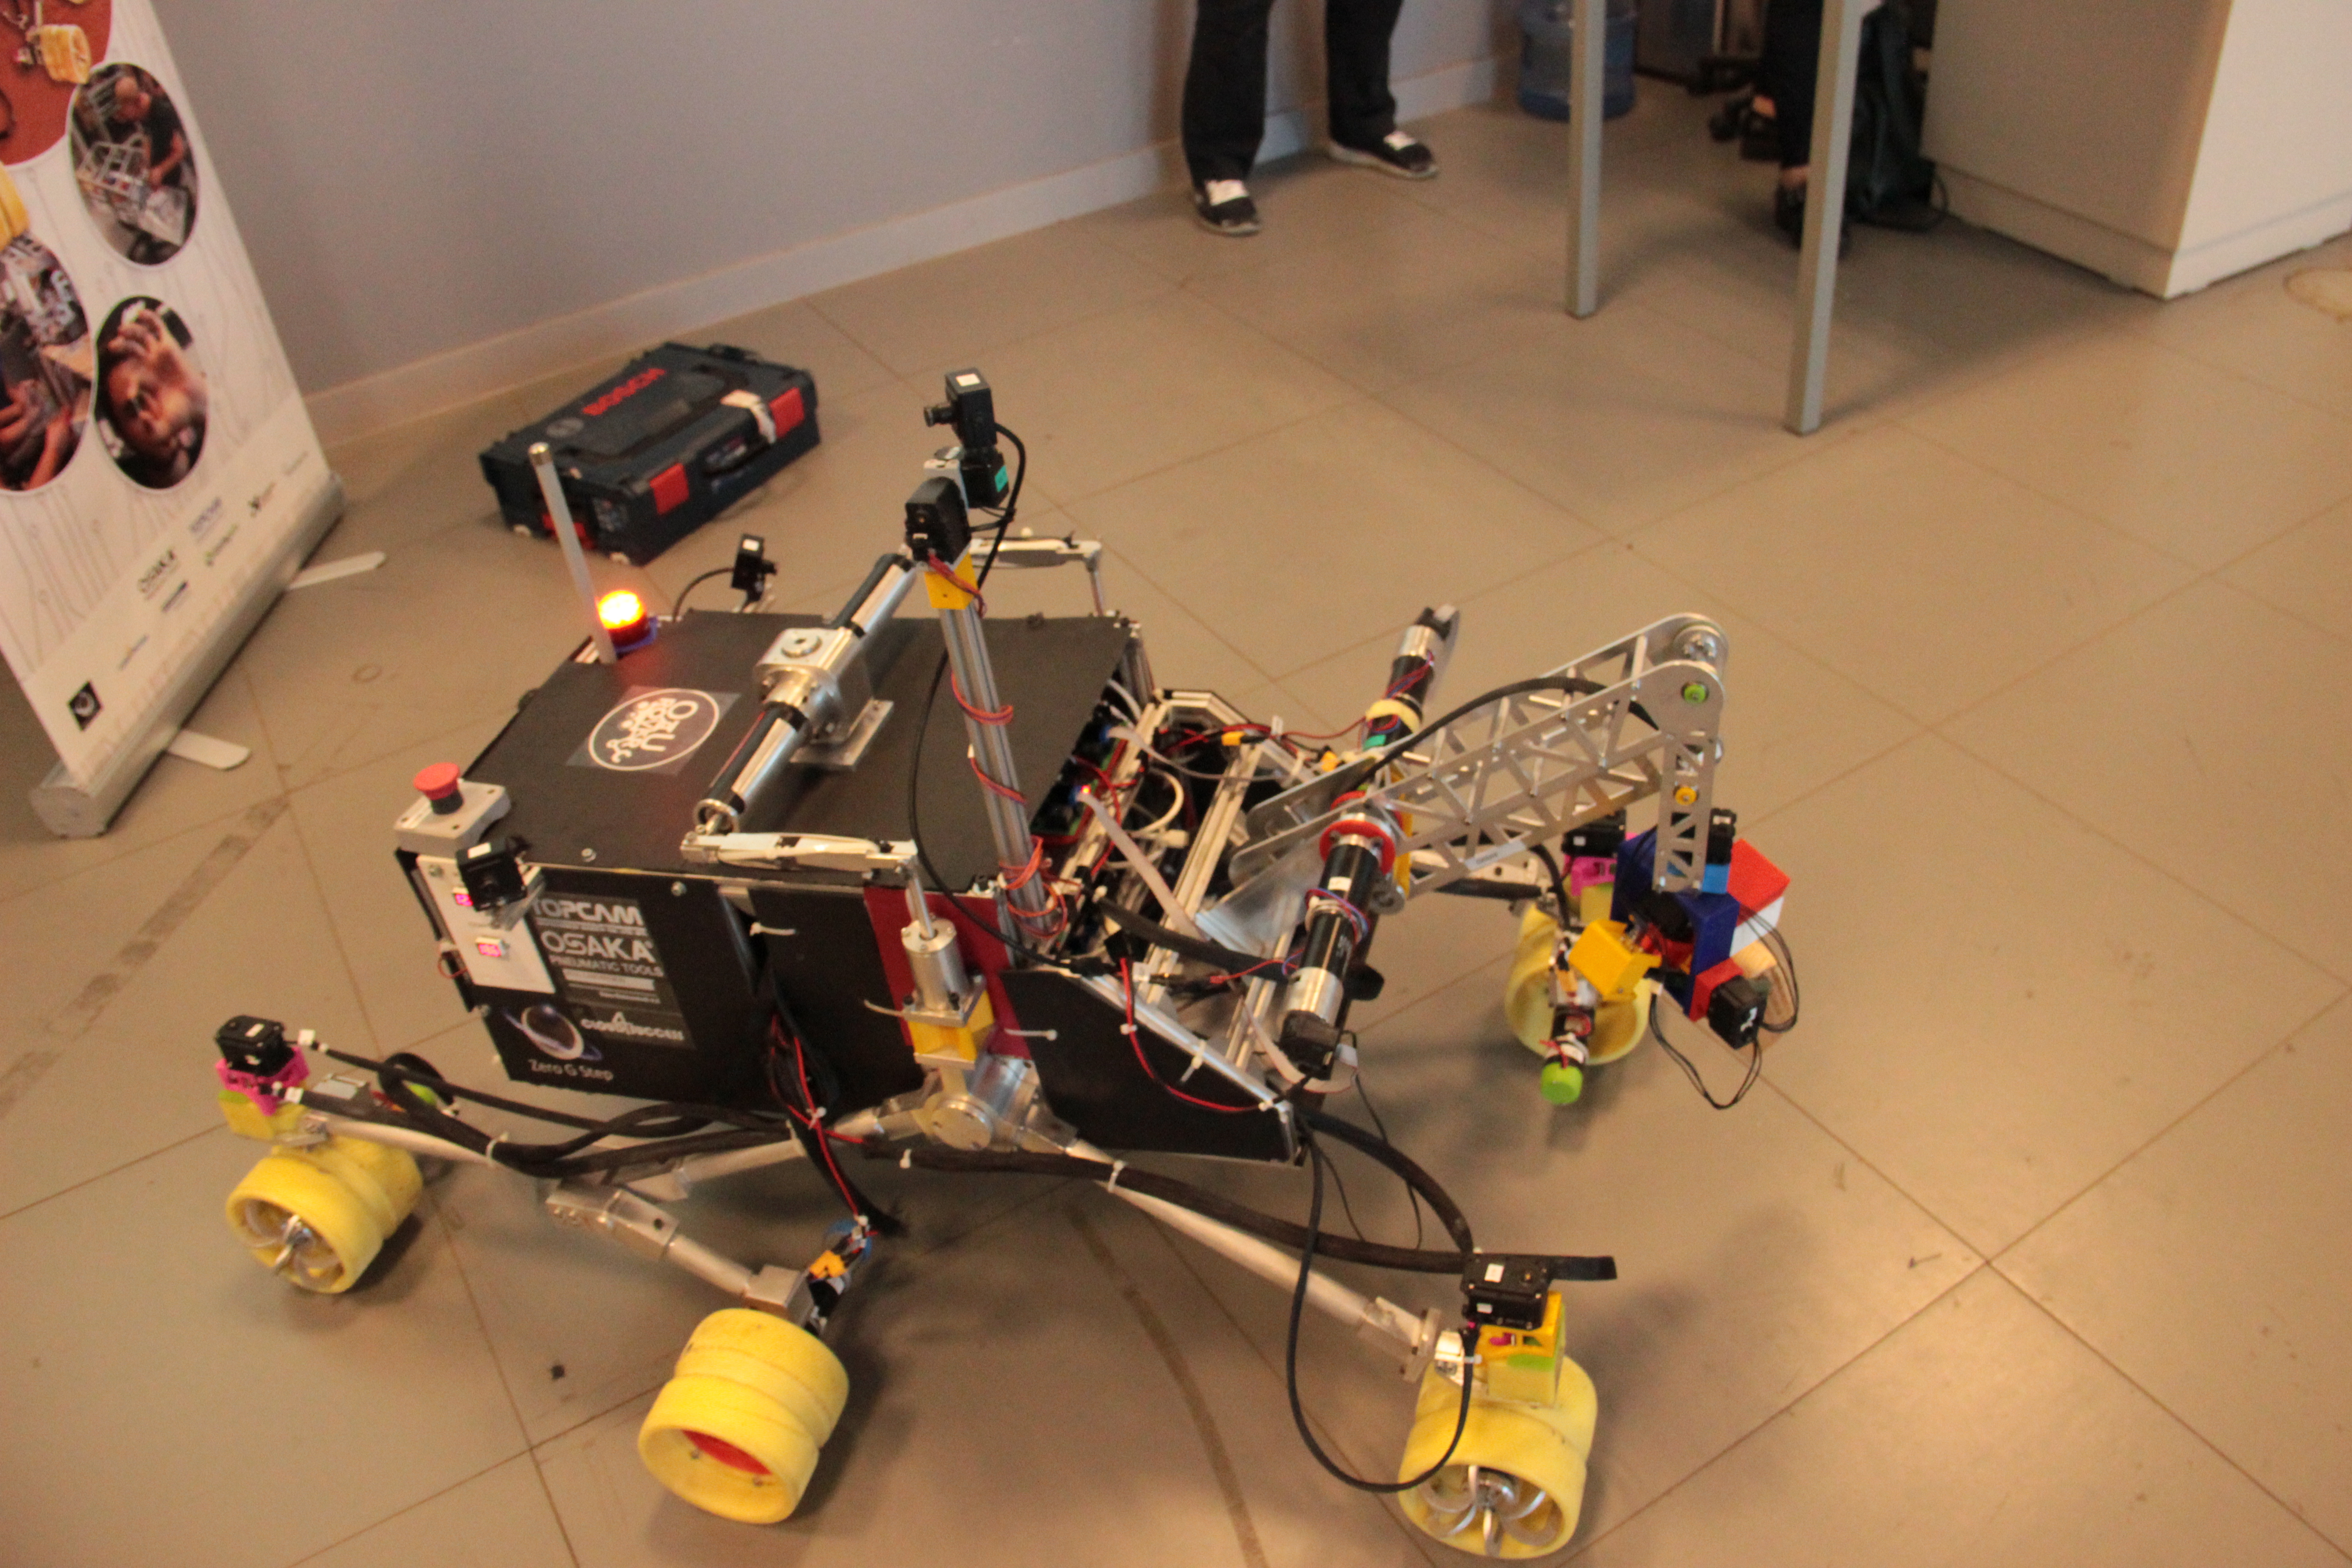 Özyeğin Üniversitesi öğrencilerinin tasarladığı mars robotu ikinci kez Türkiye’den katılan tek takım olarak Polonya’da yarışacak-1146